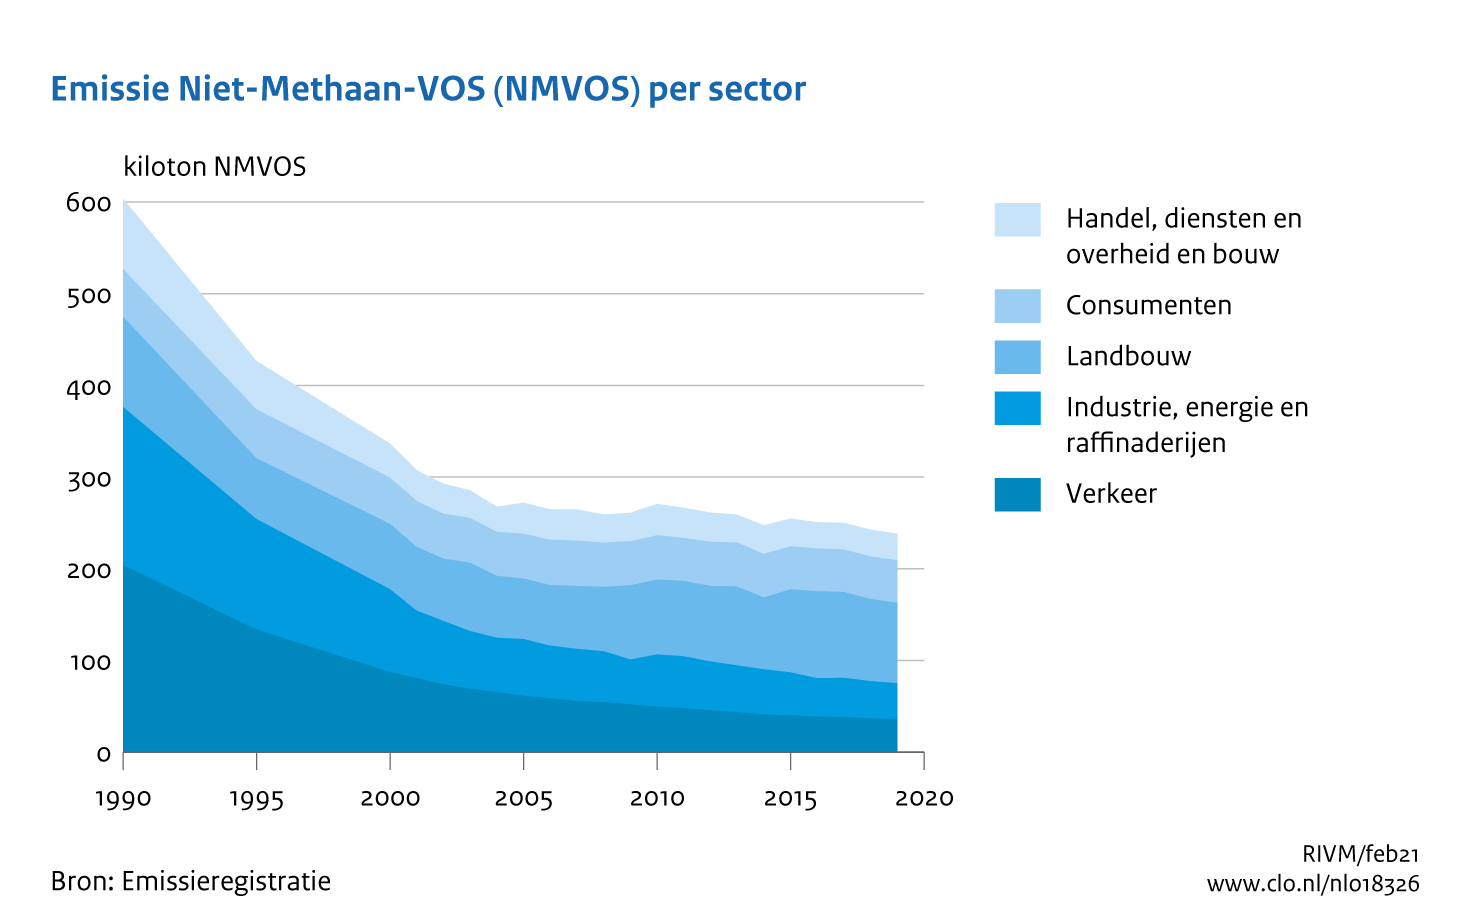 Figuur NMVOS-emissie per sector. In de rest van de tekst wordt deze figuur uitgebreider uitgelegd.